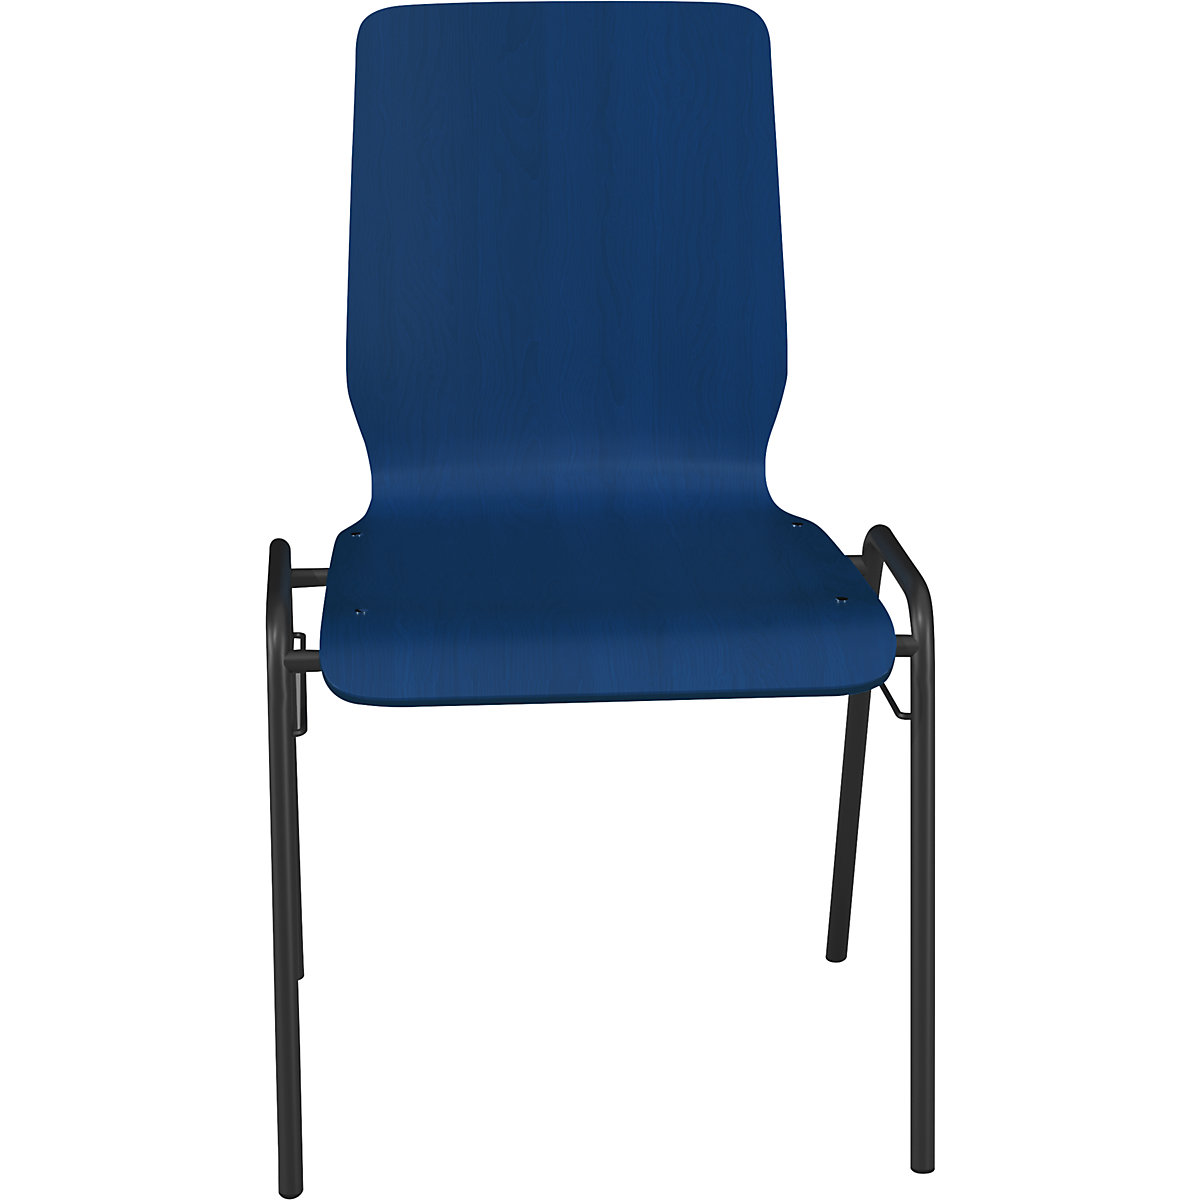 Drevená škrupinová stolička NUKI, podstavec s povrchovou úpravou, OJ 4 ks, drevo enciánová modrá-3